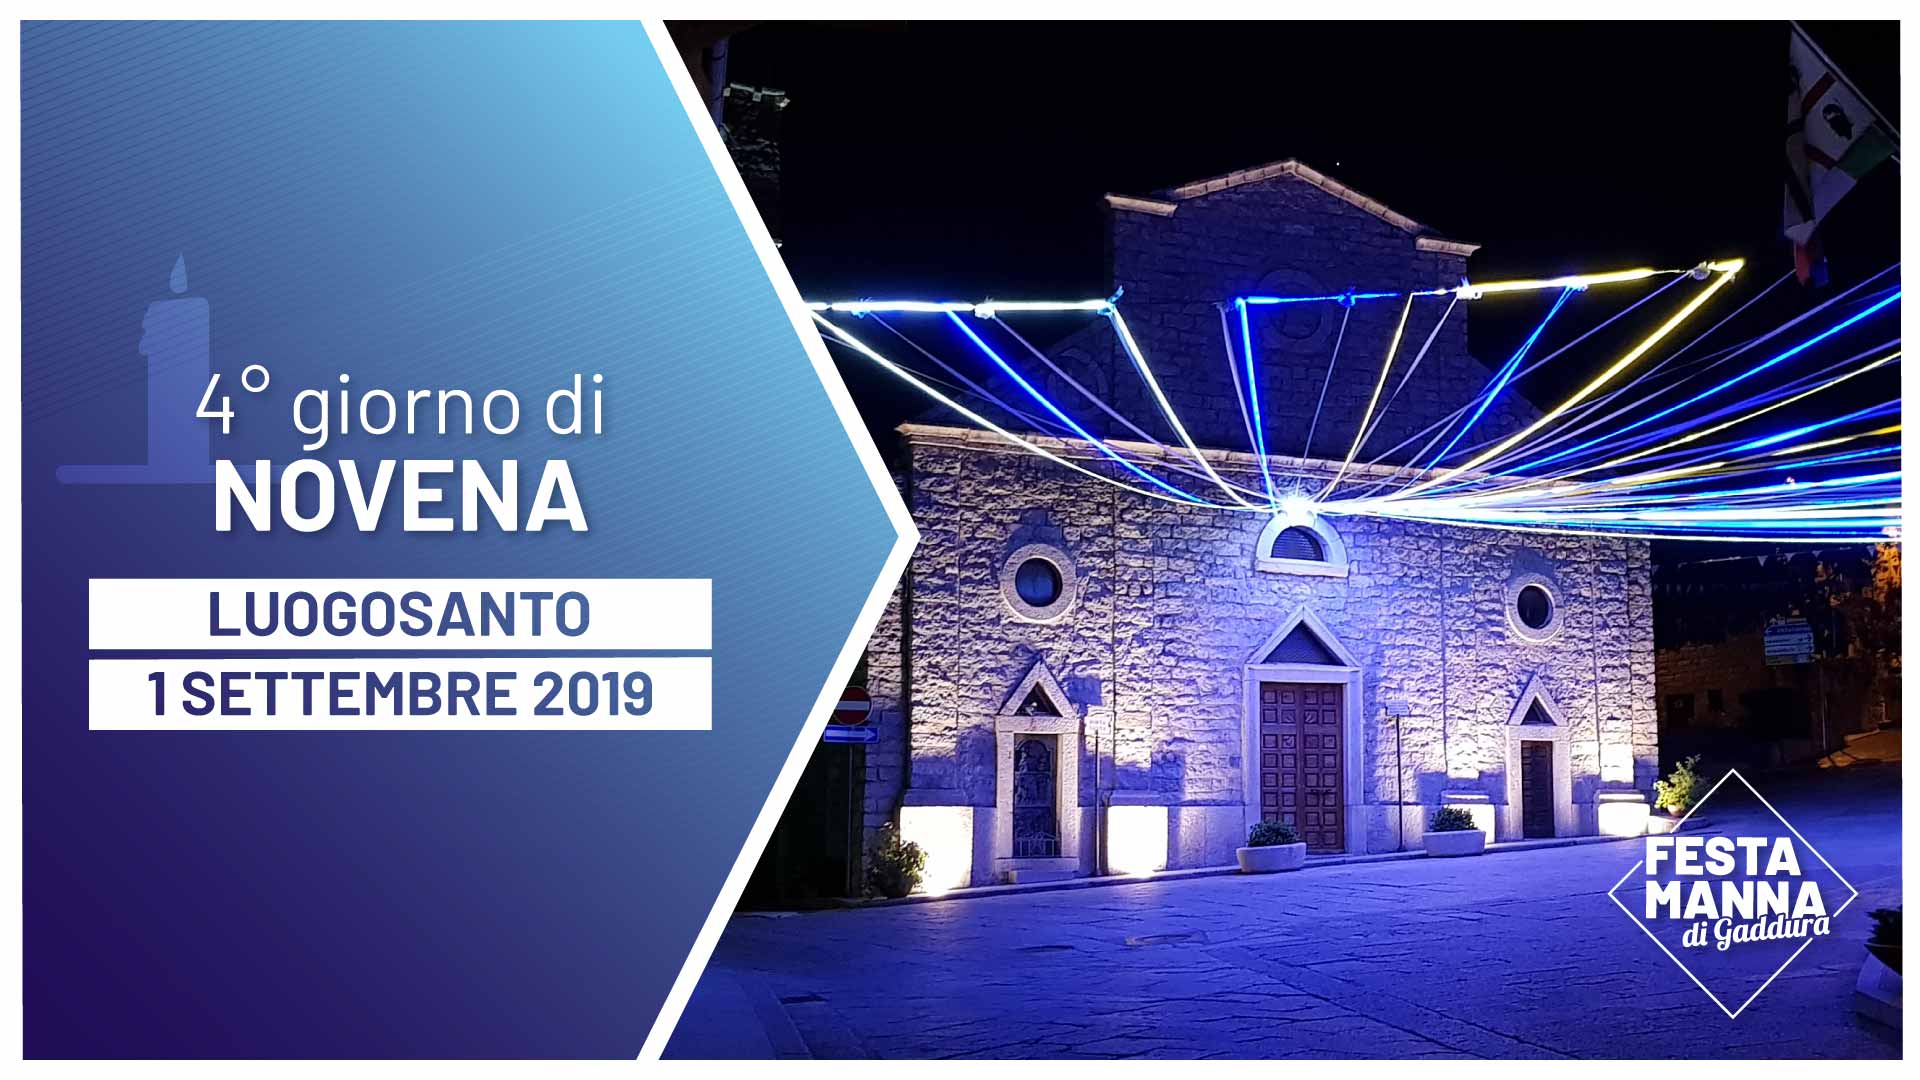 Fourth day of the novena | Festa Manna di Gaddura 2019